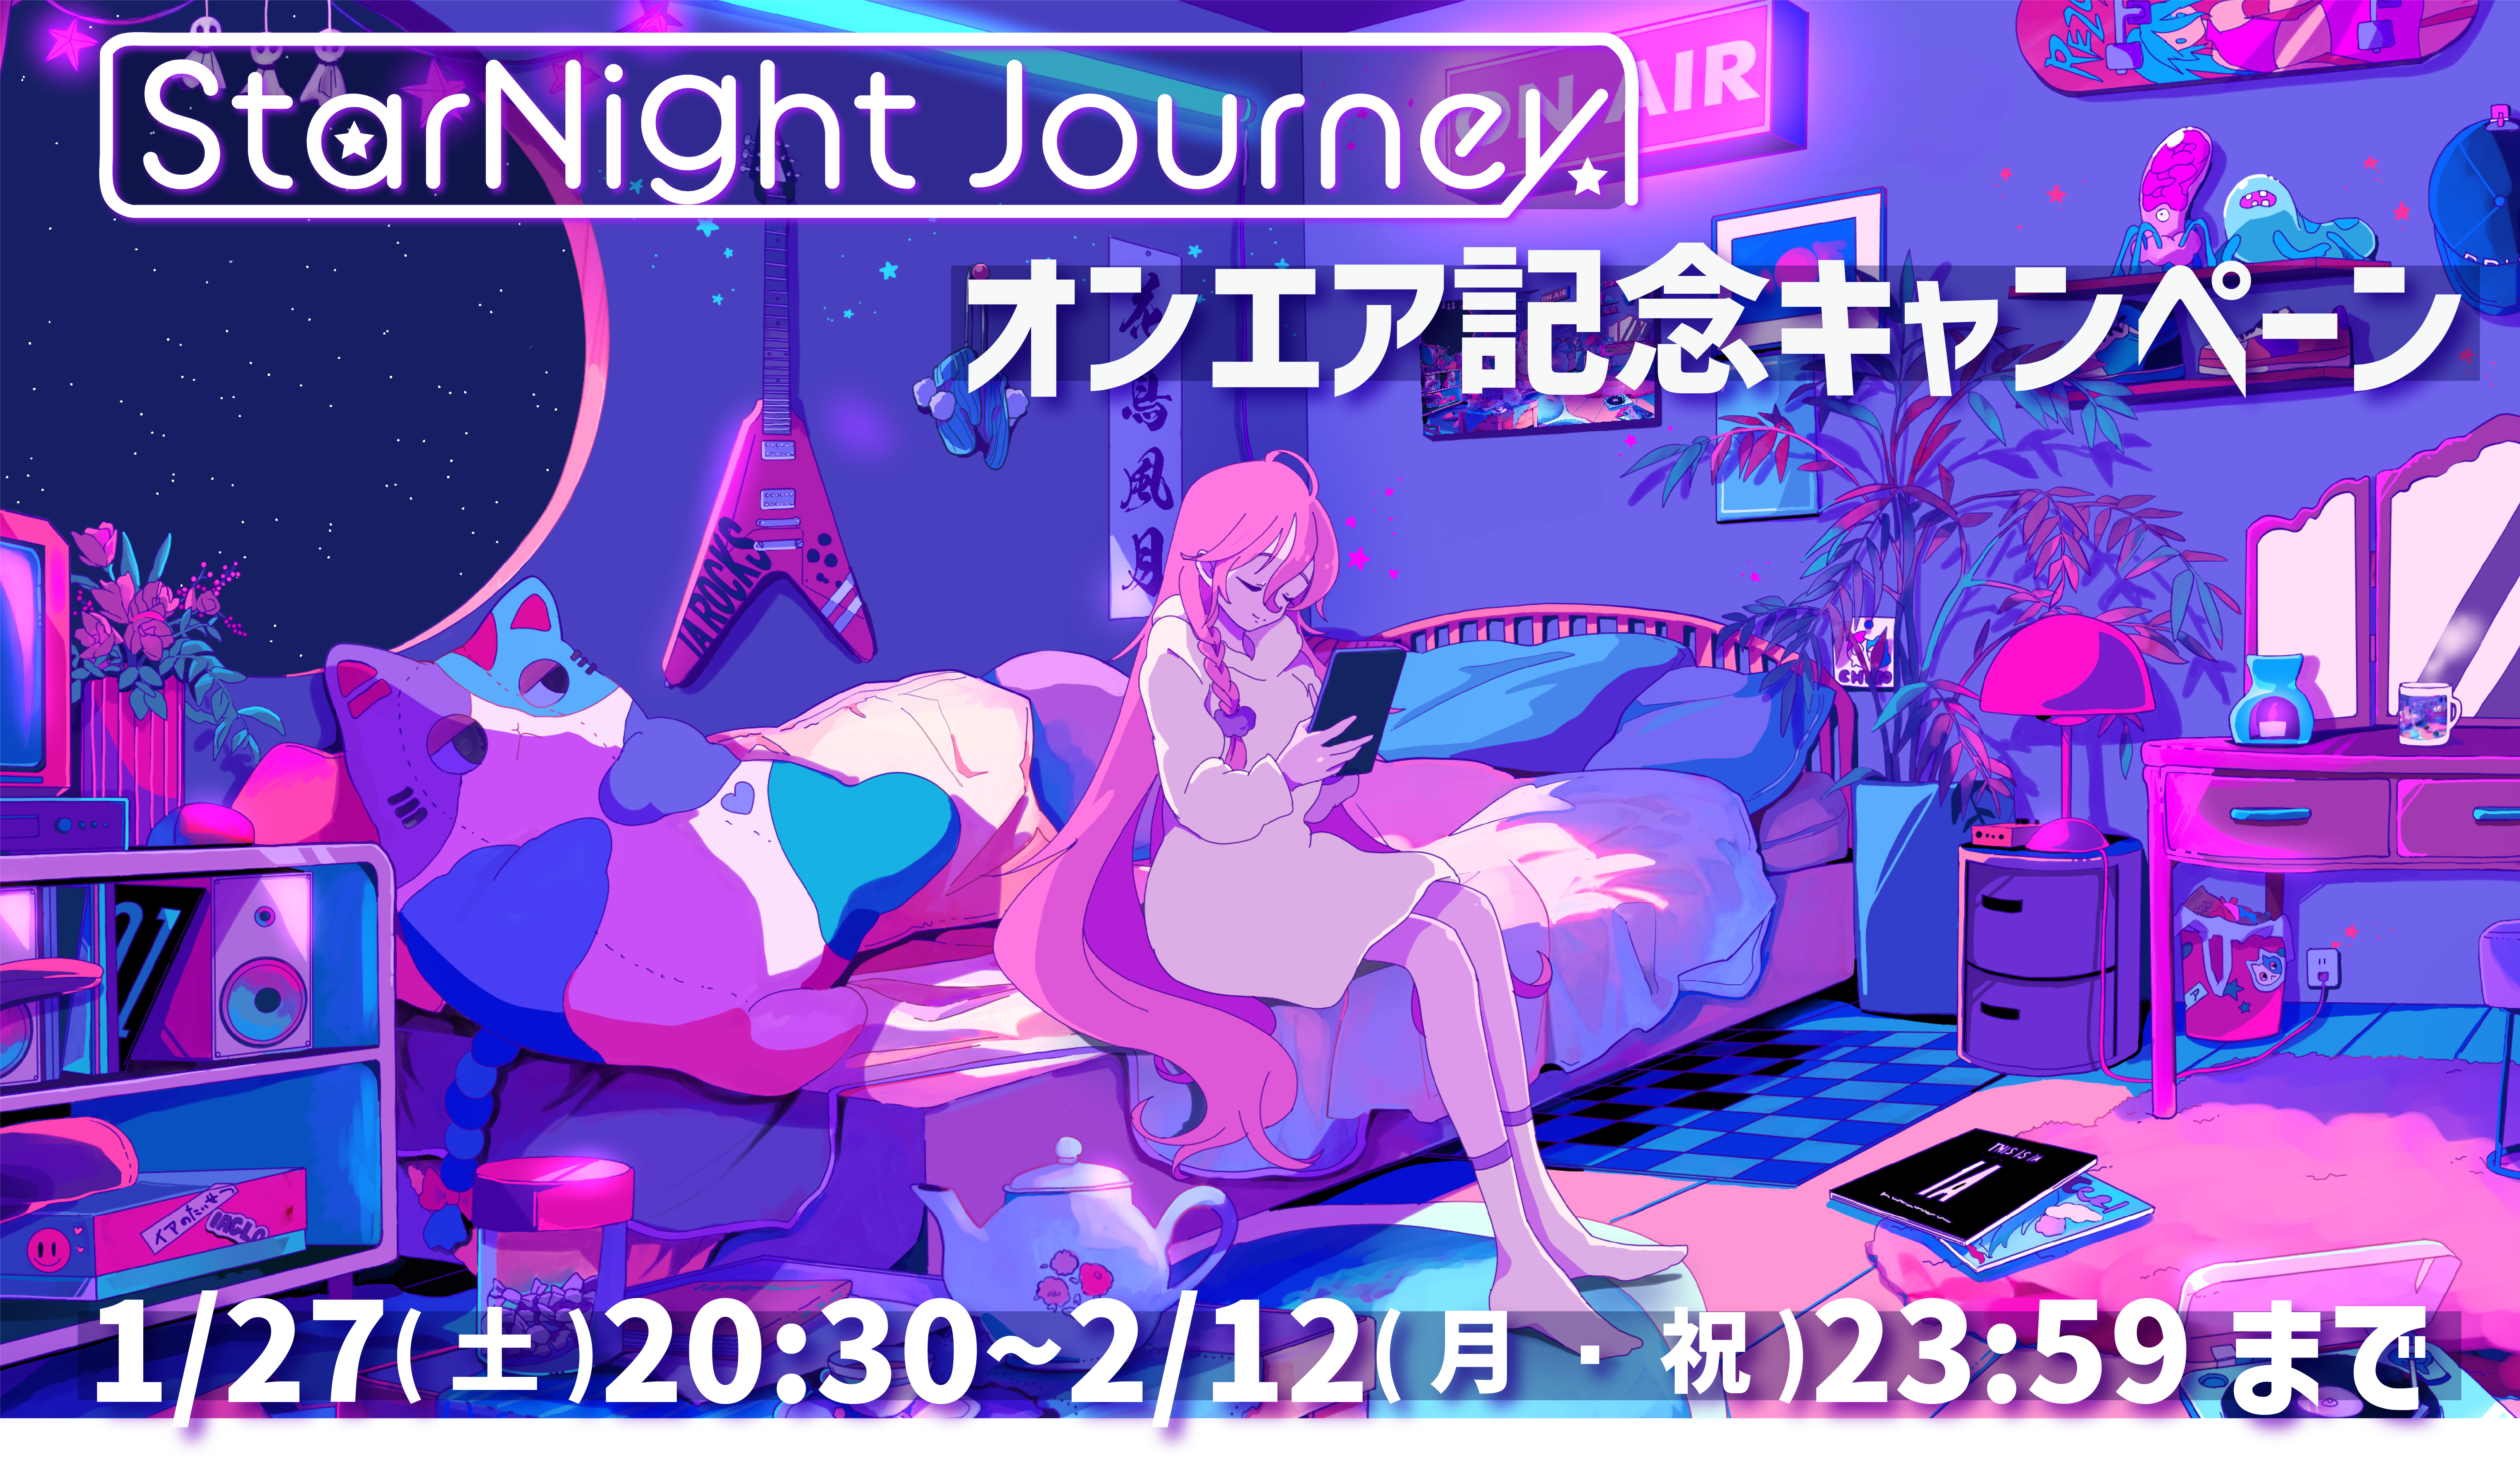 【新作グッズ/キャンペーン INFO】2/12(月・祝)まで1st PLACE Official Shop -HACHIMAKI-で”StarNight Journey オンエア記念キャンペーン”がスタート!!